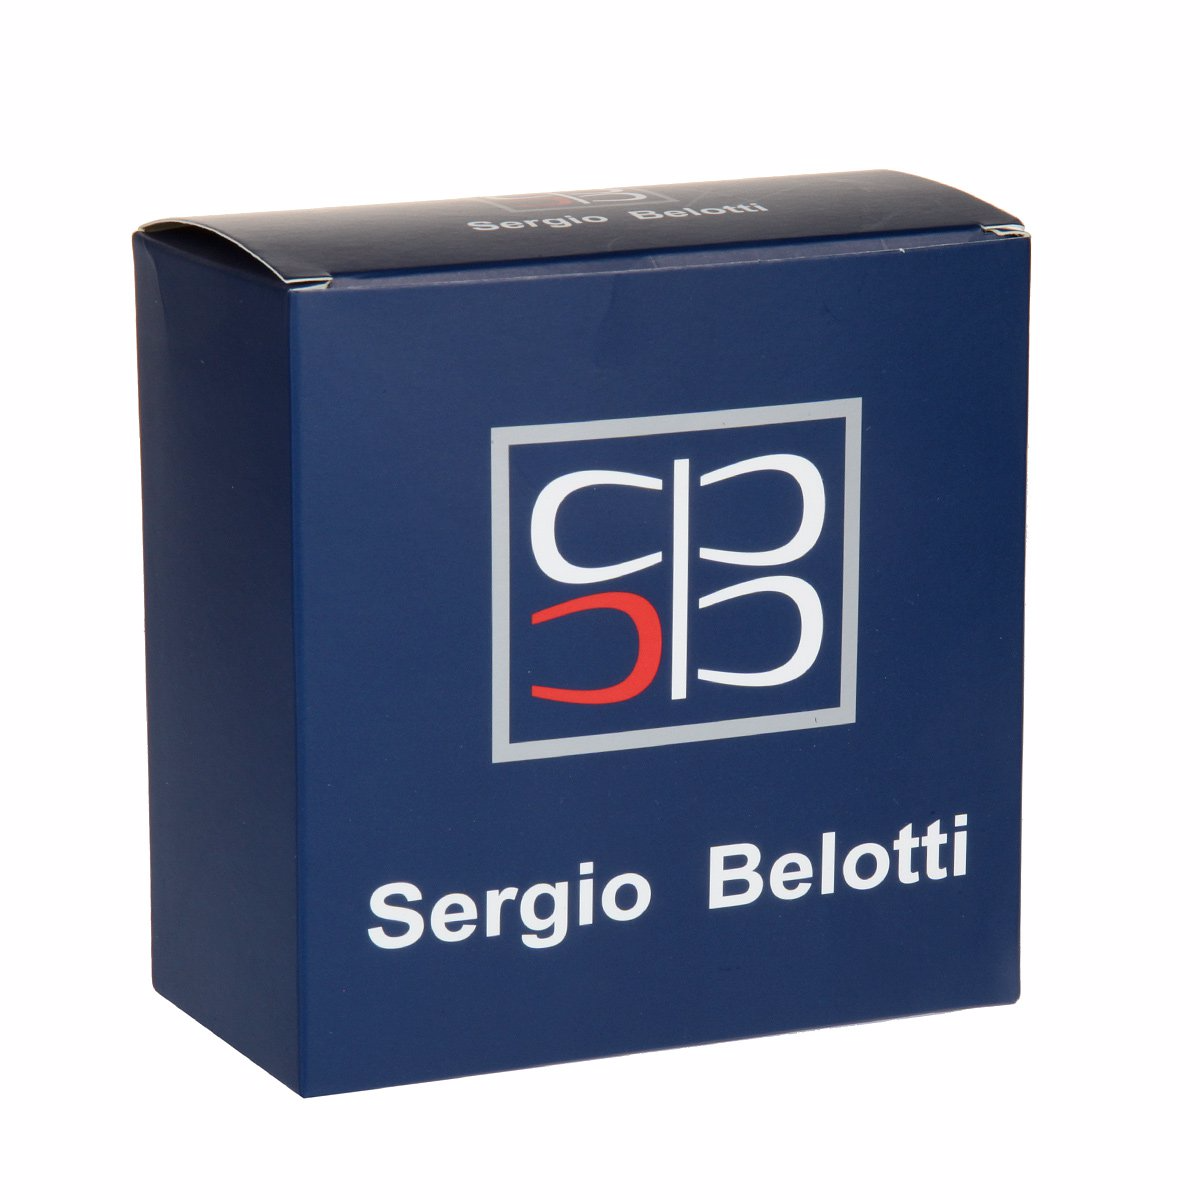 Ремень брючный
Sergio Belotti
10847/35 Saffiano VIP Ремни и пояса